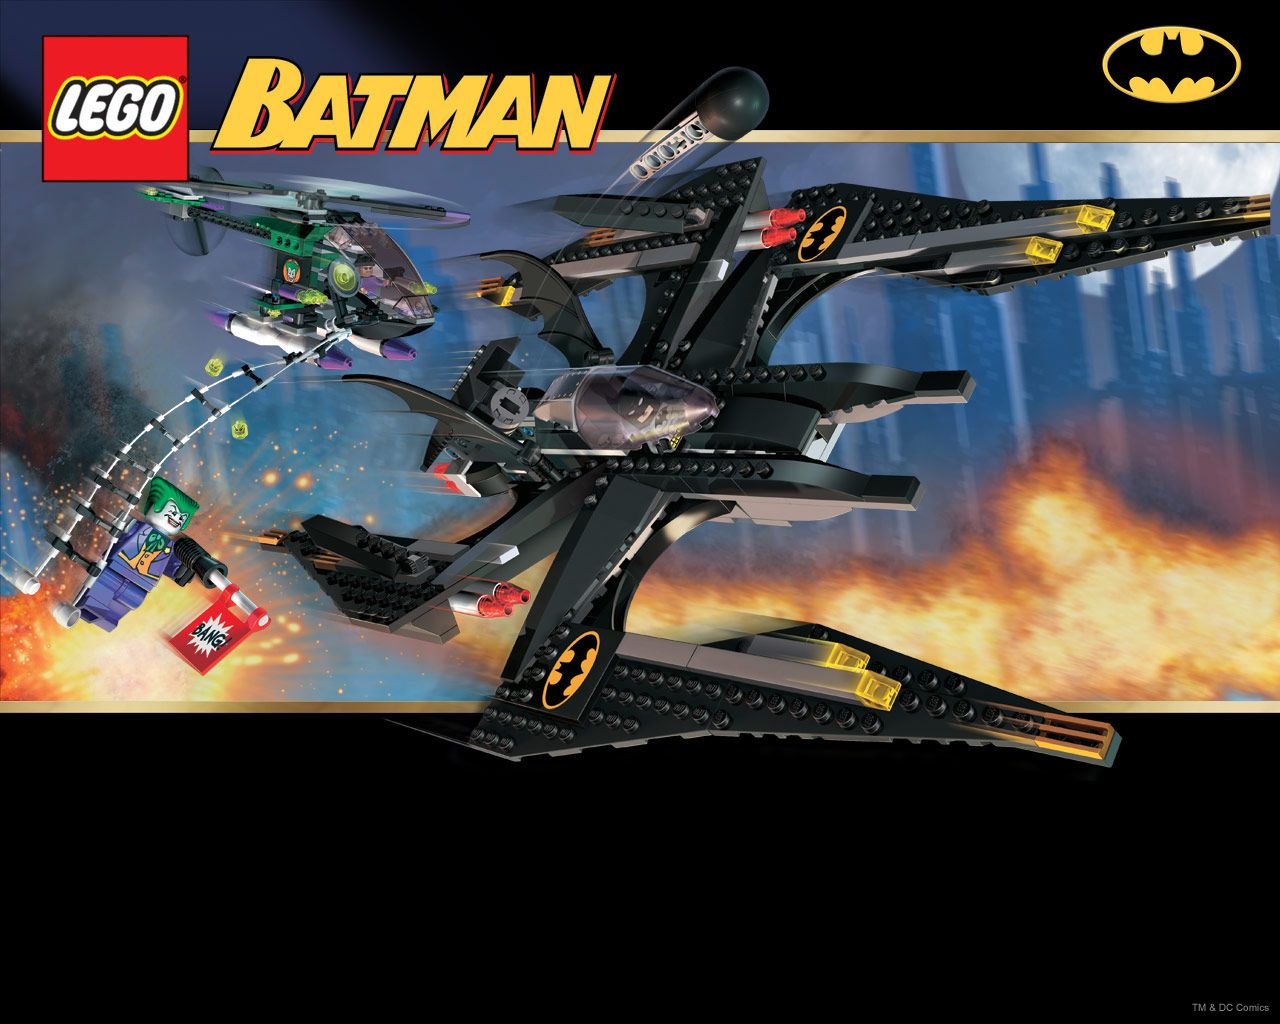 Batwing w/ Joker Helicopter. Lego batman, Lego, Batman